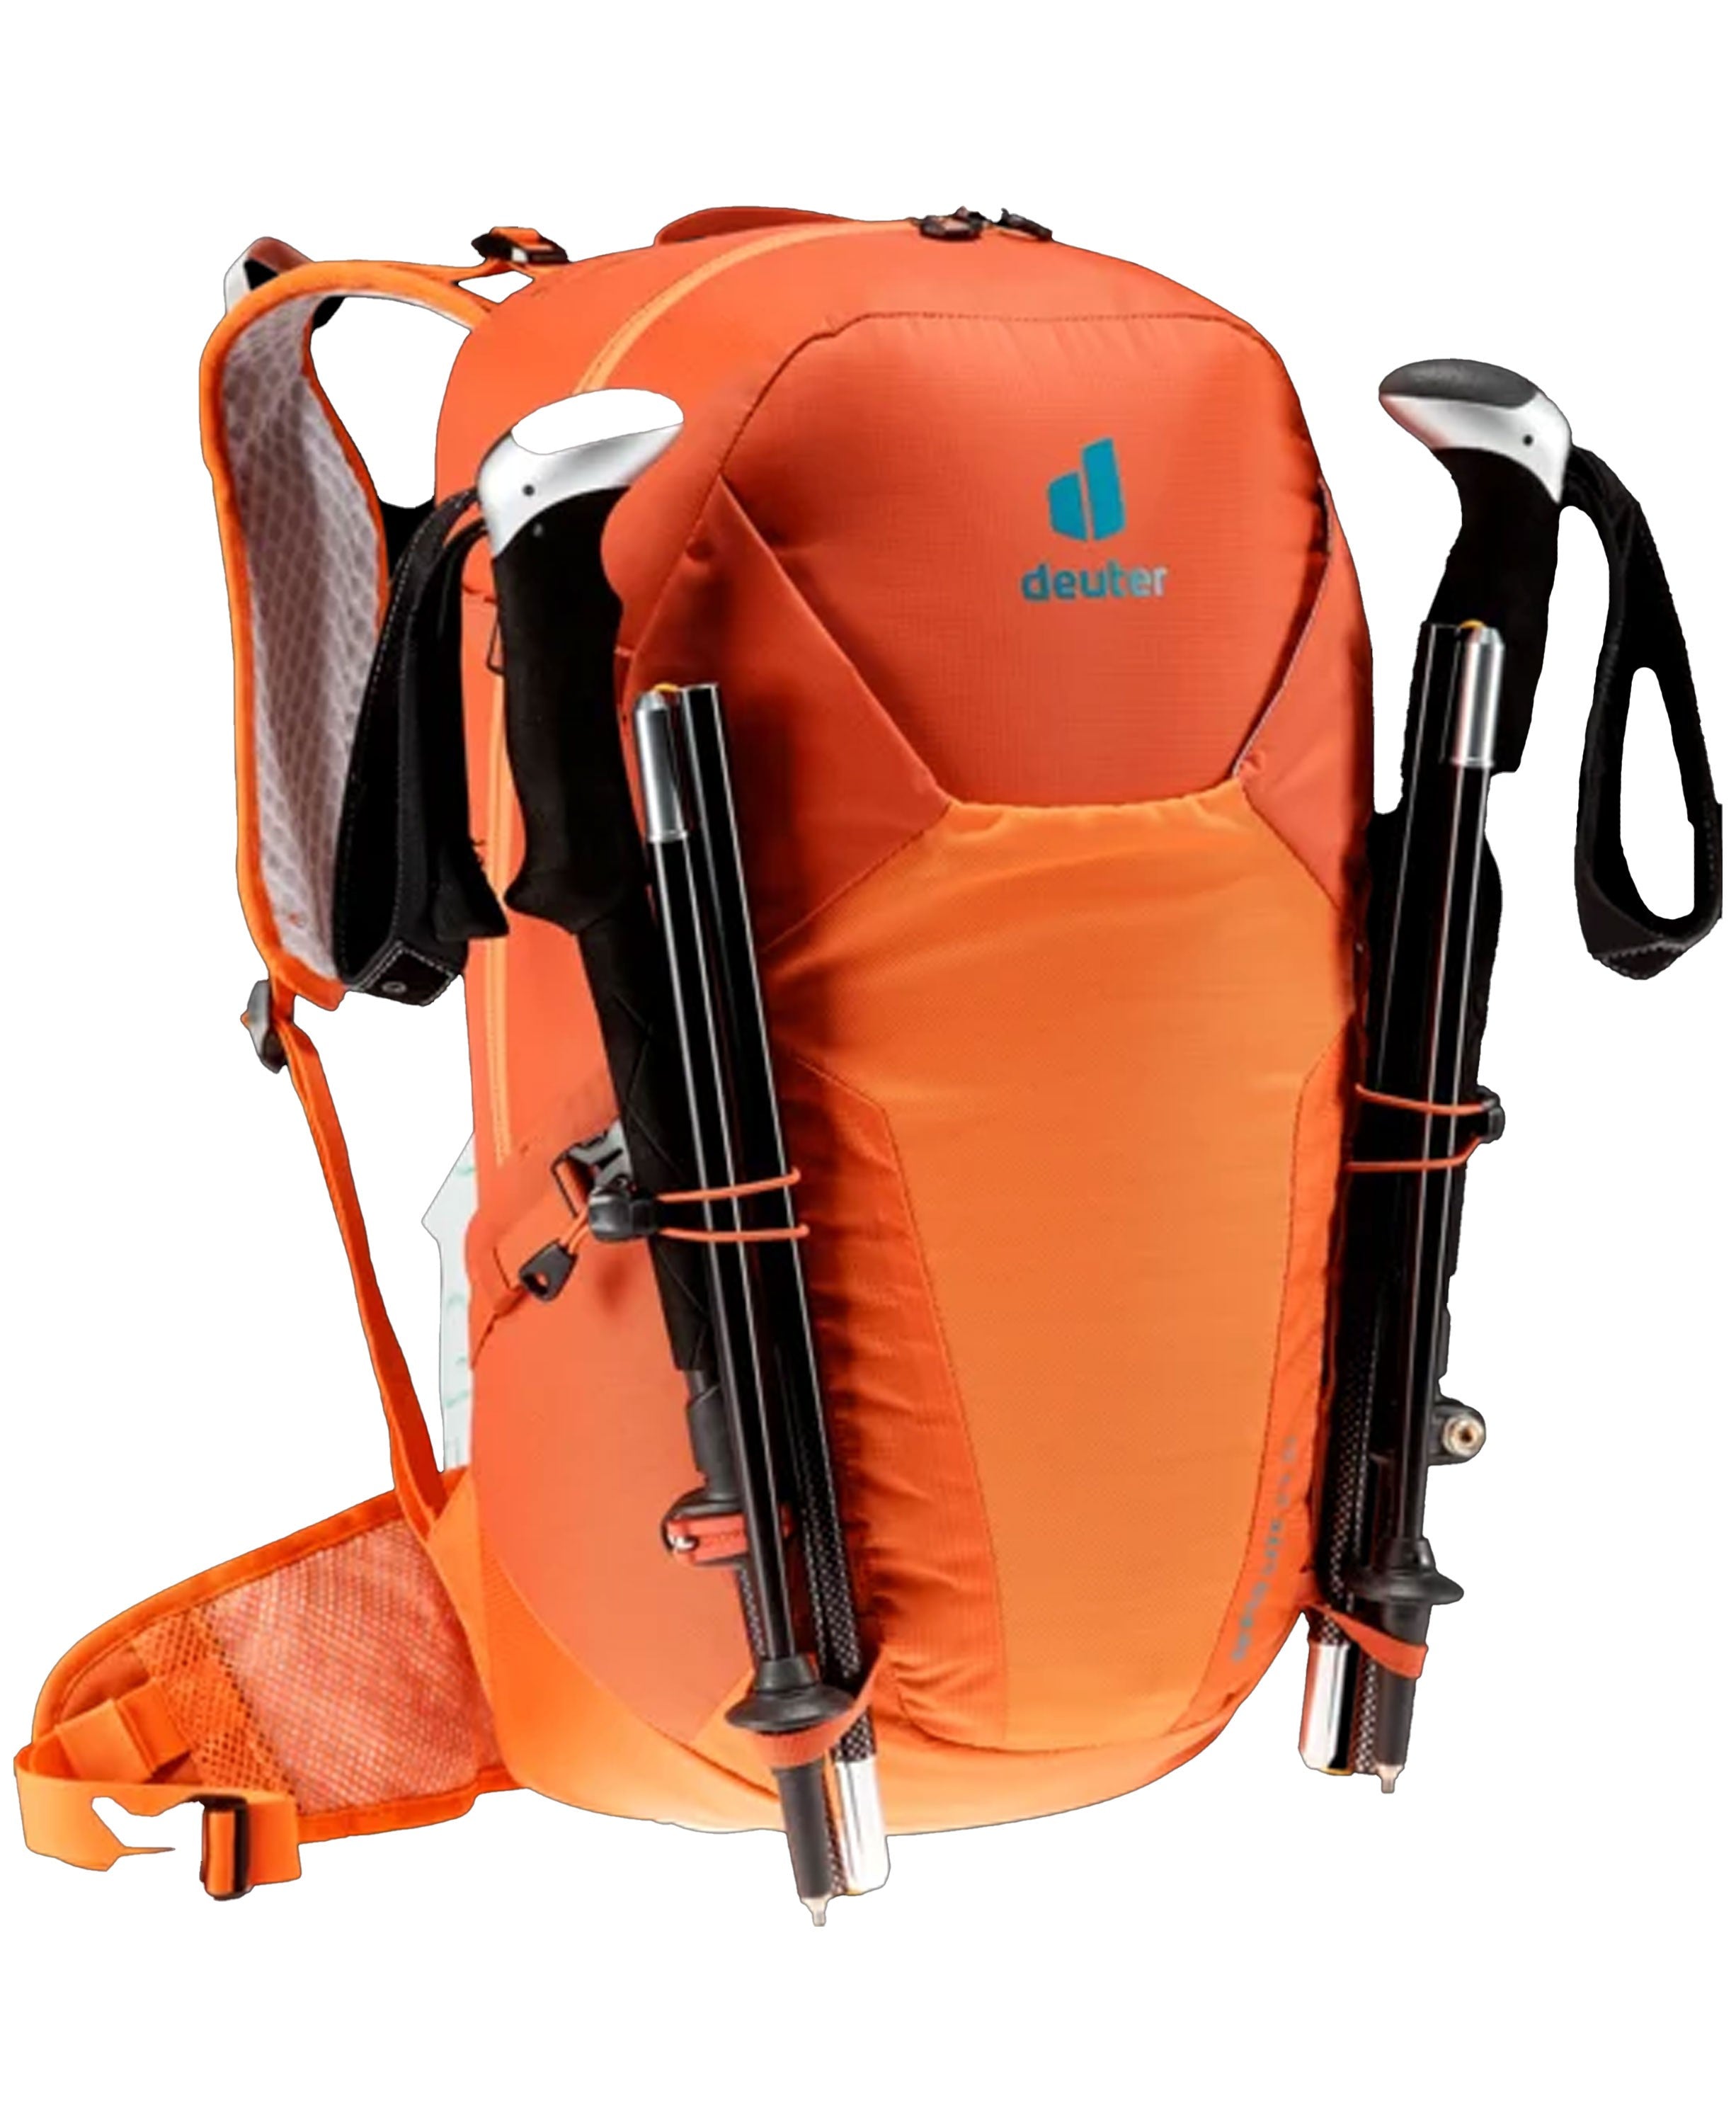 Speed Lite 23 Backpack - Paprika/Saffron